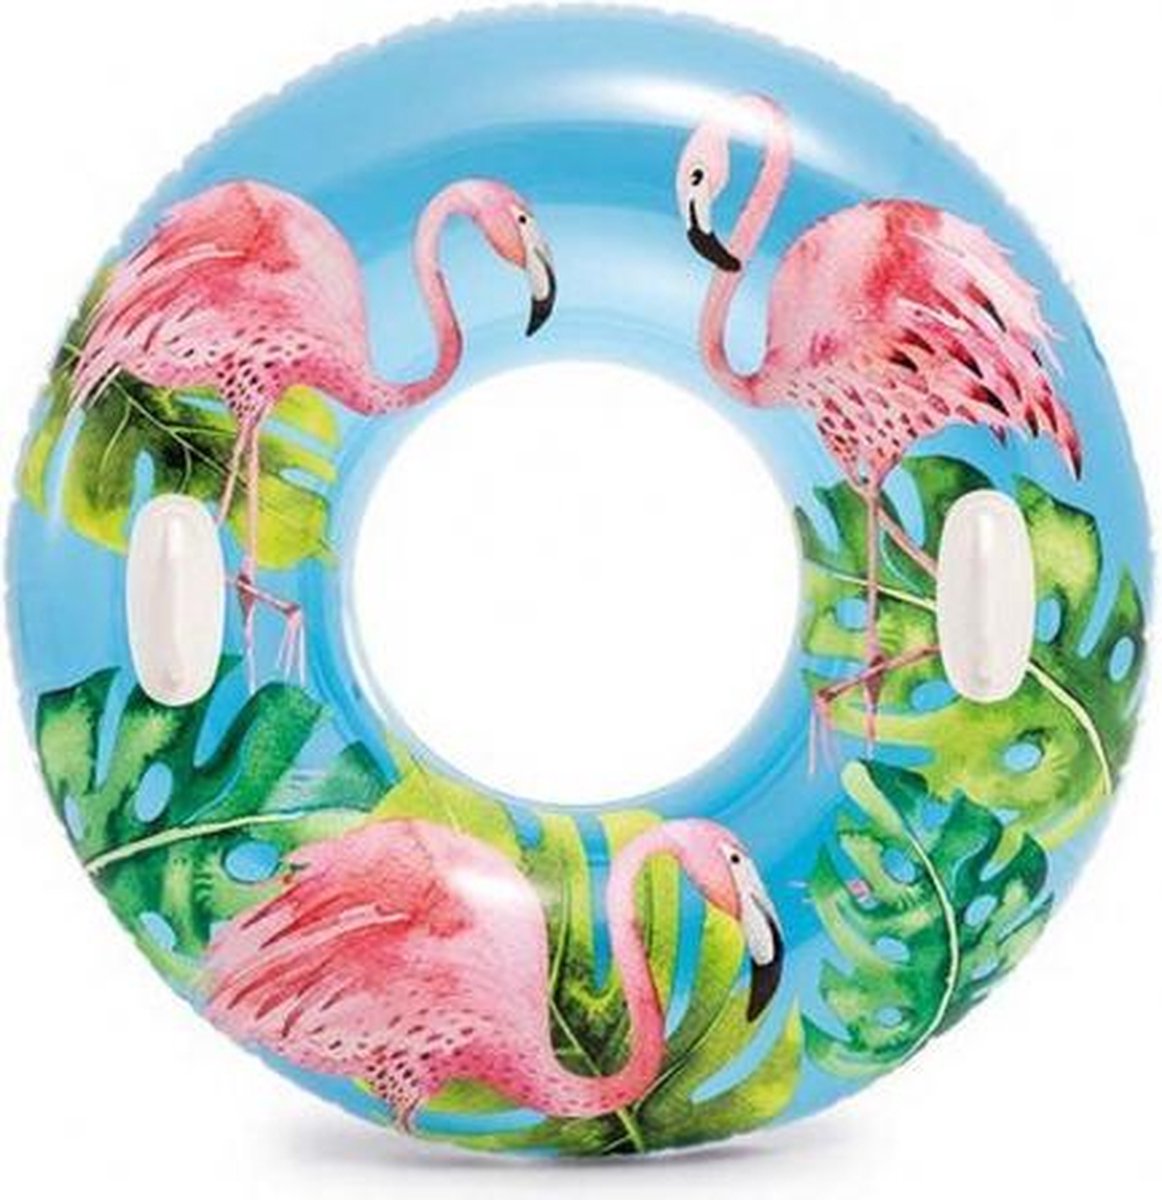 zwemband flamingo roze/blauw 97 cm